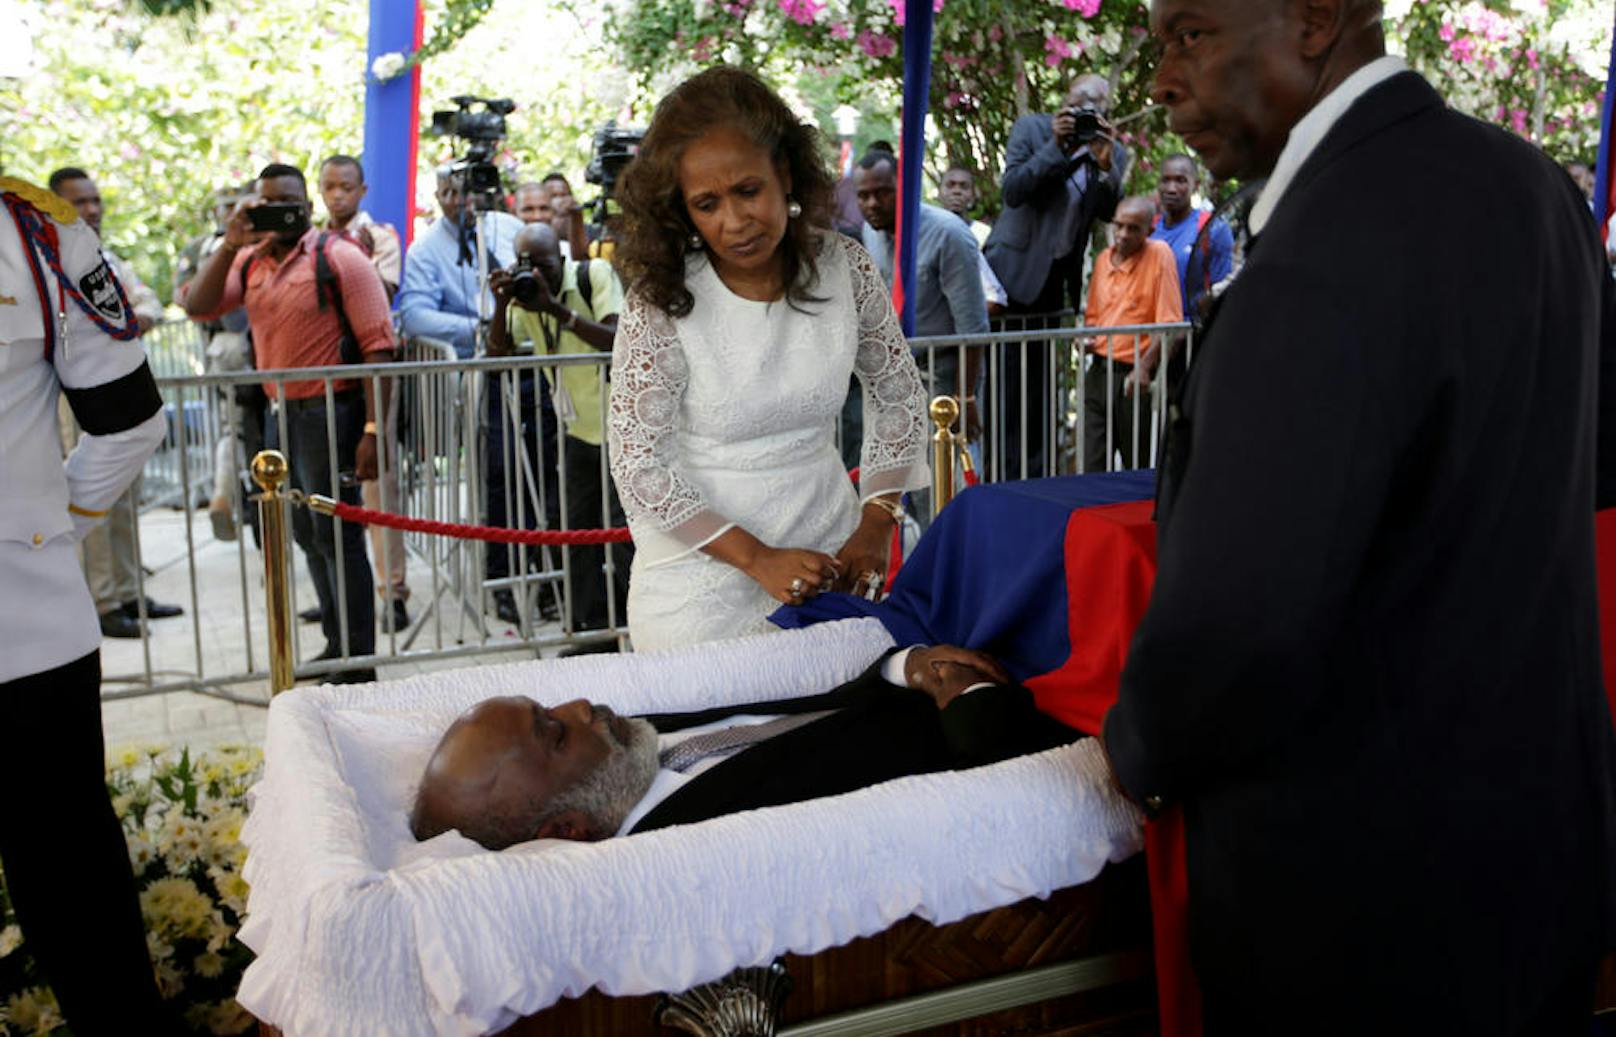 10.03.2017: Haitis Ex-Präsident wird begraben: Die ehemalige First Lady von Haiti, Elisabeth D. Preval am offenen Sarg ihres Ehemannes, dem früheren Präsidenten Rene Preval während seinem Begräbnis in Port-au-Prince.